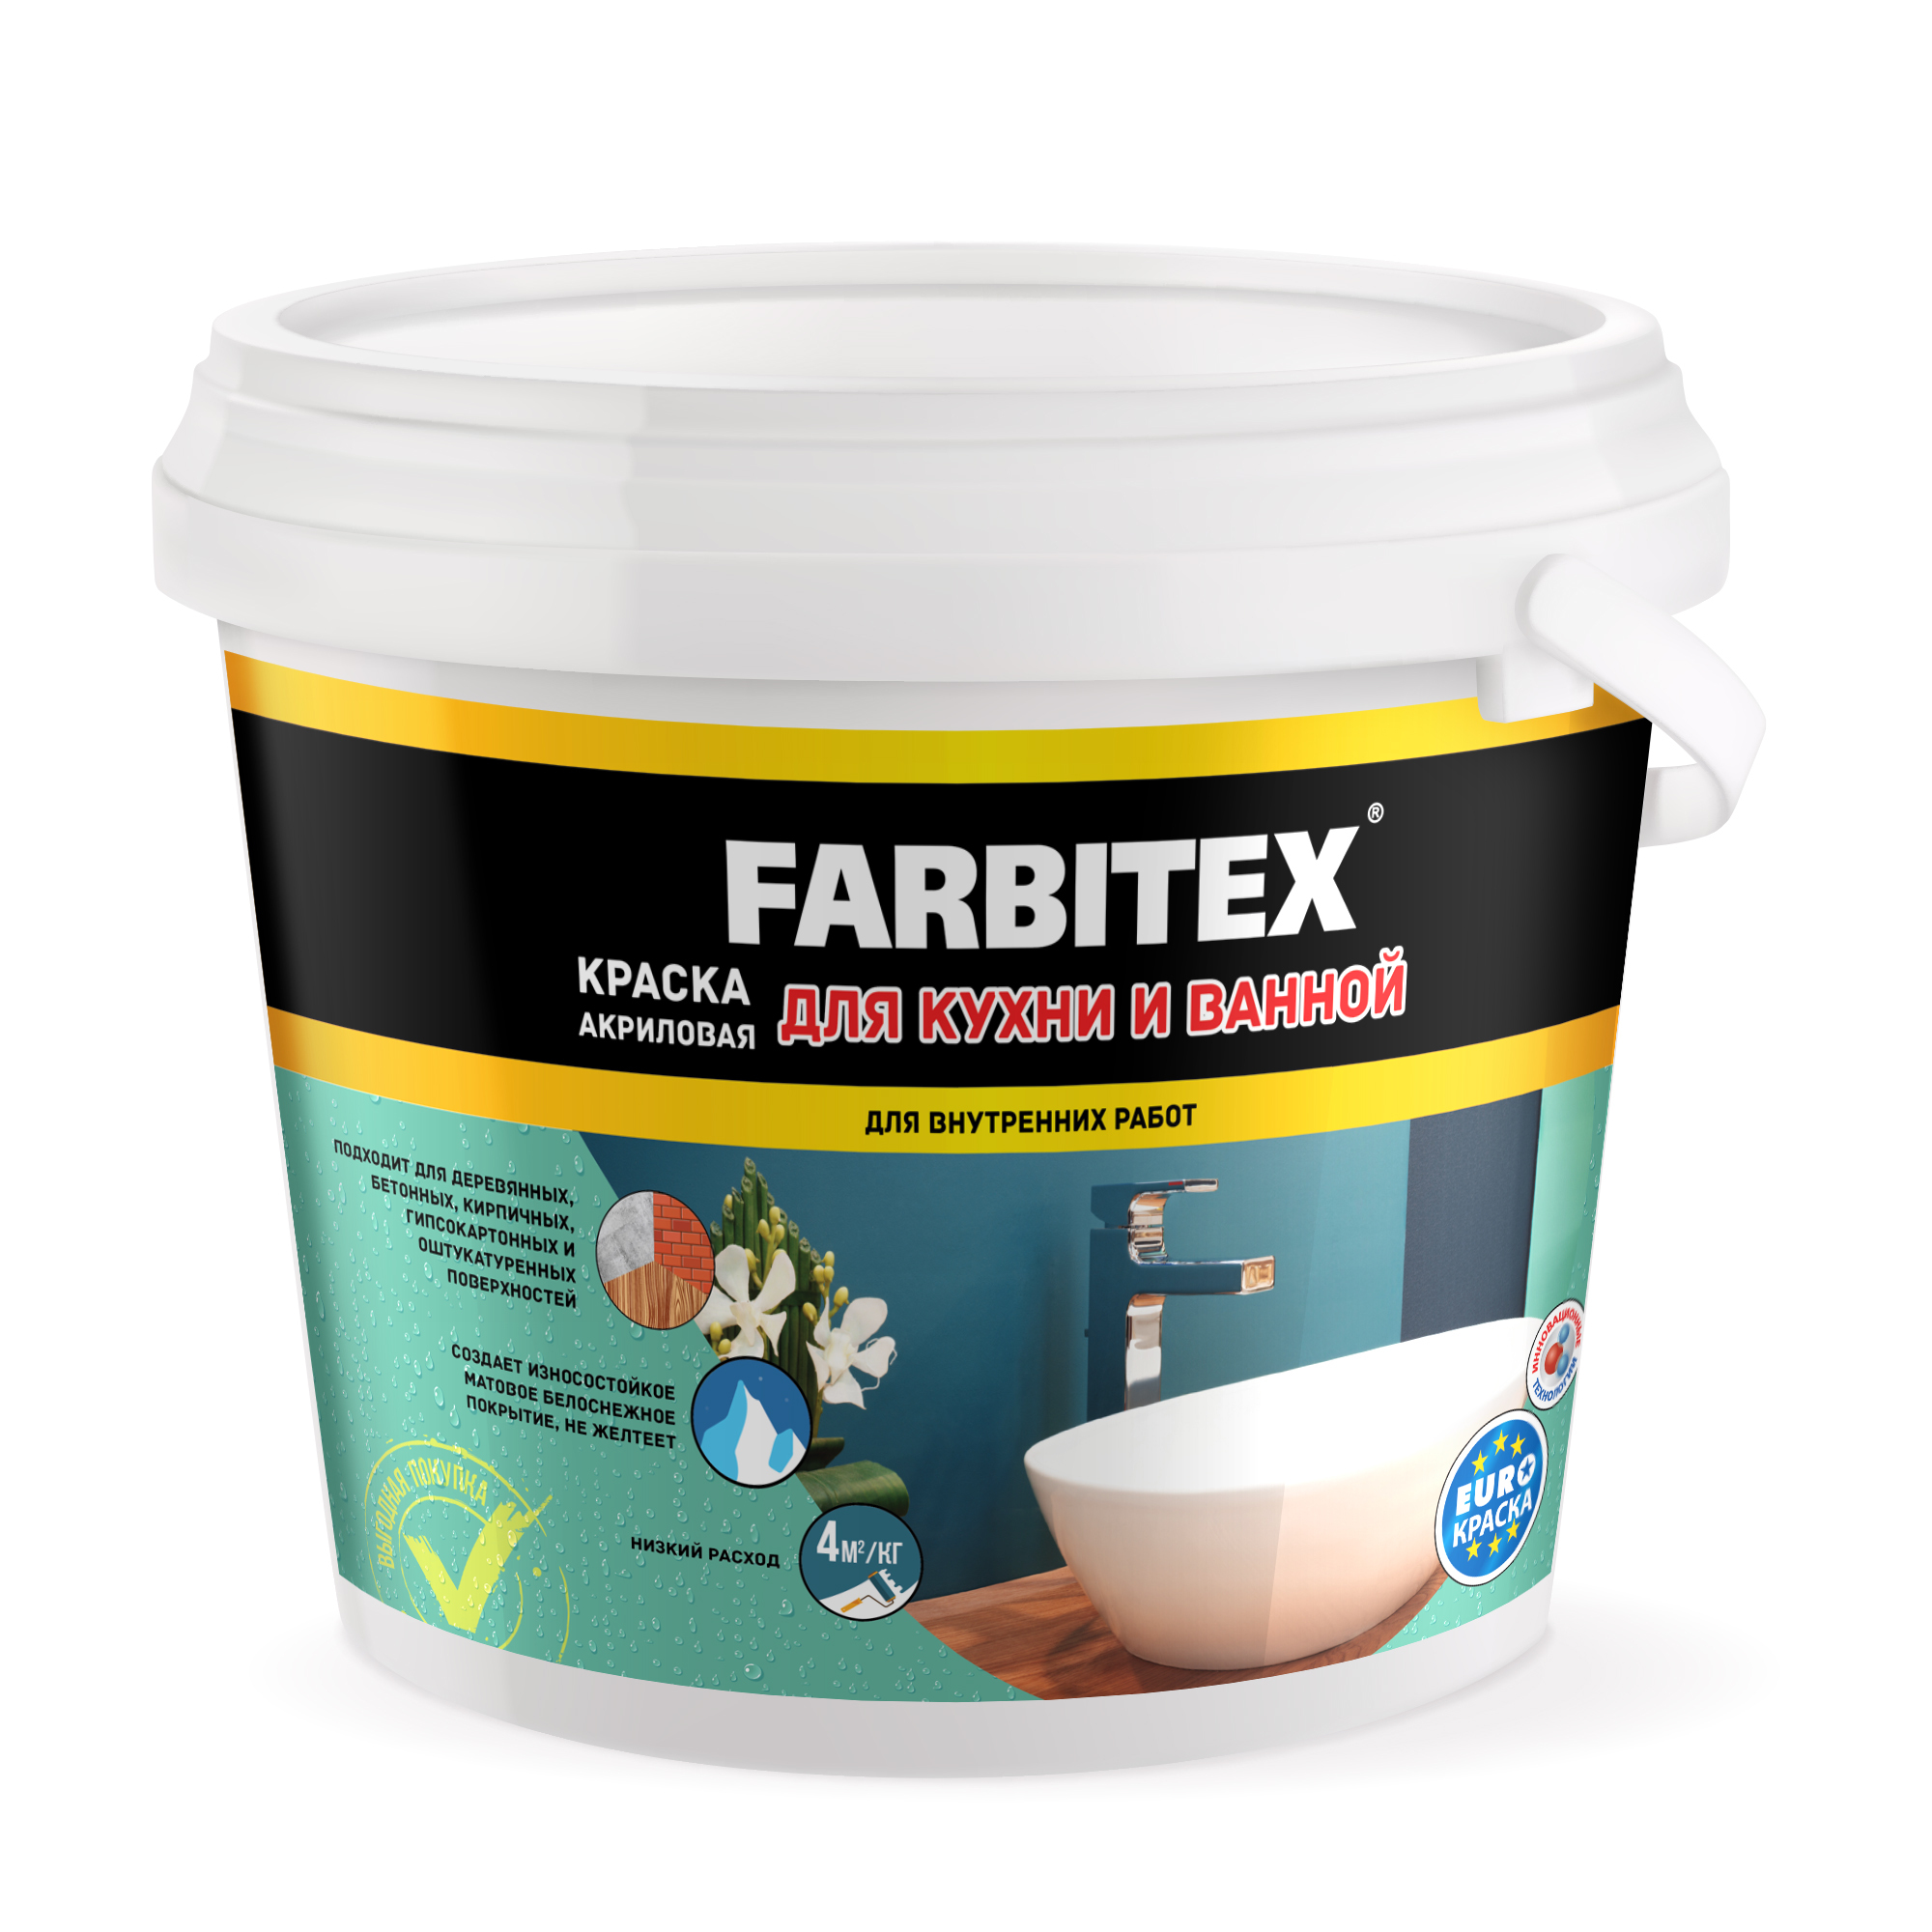 Купить акриловою краску для ванной. Краска акриловая для кухни и ванной "FARBITEX" 6кг. Краска Фарбитекс моющаяся 13 кг. Краска акриловая моющаяся 6,0 кг/FARBITEX/. Краска для стен, моющаяся, 13кг, FARBITEX.